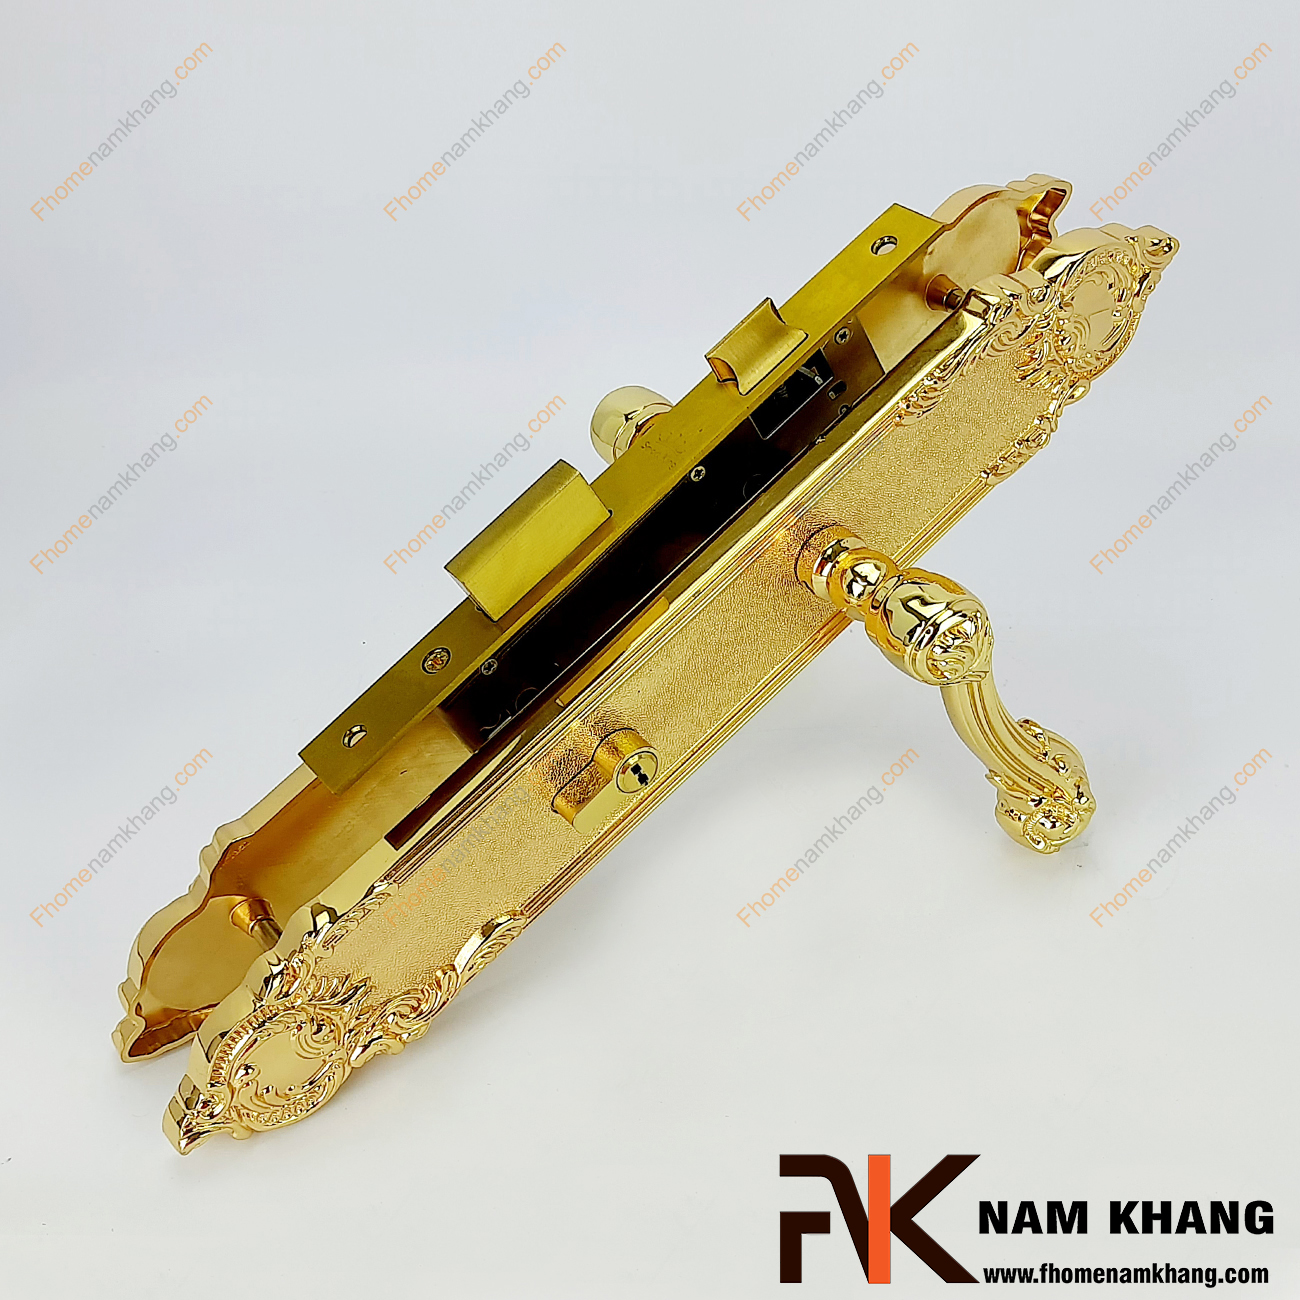 Khóa cửa chính bằng đồng vàng cao cấp NK192L-24K là một bộ sản phẩm khóa cửa cao cấp chuyên dùng cho các dạng cửa chính lớn, cửa cao cấp 2 cửa và 4 cửa.